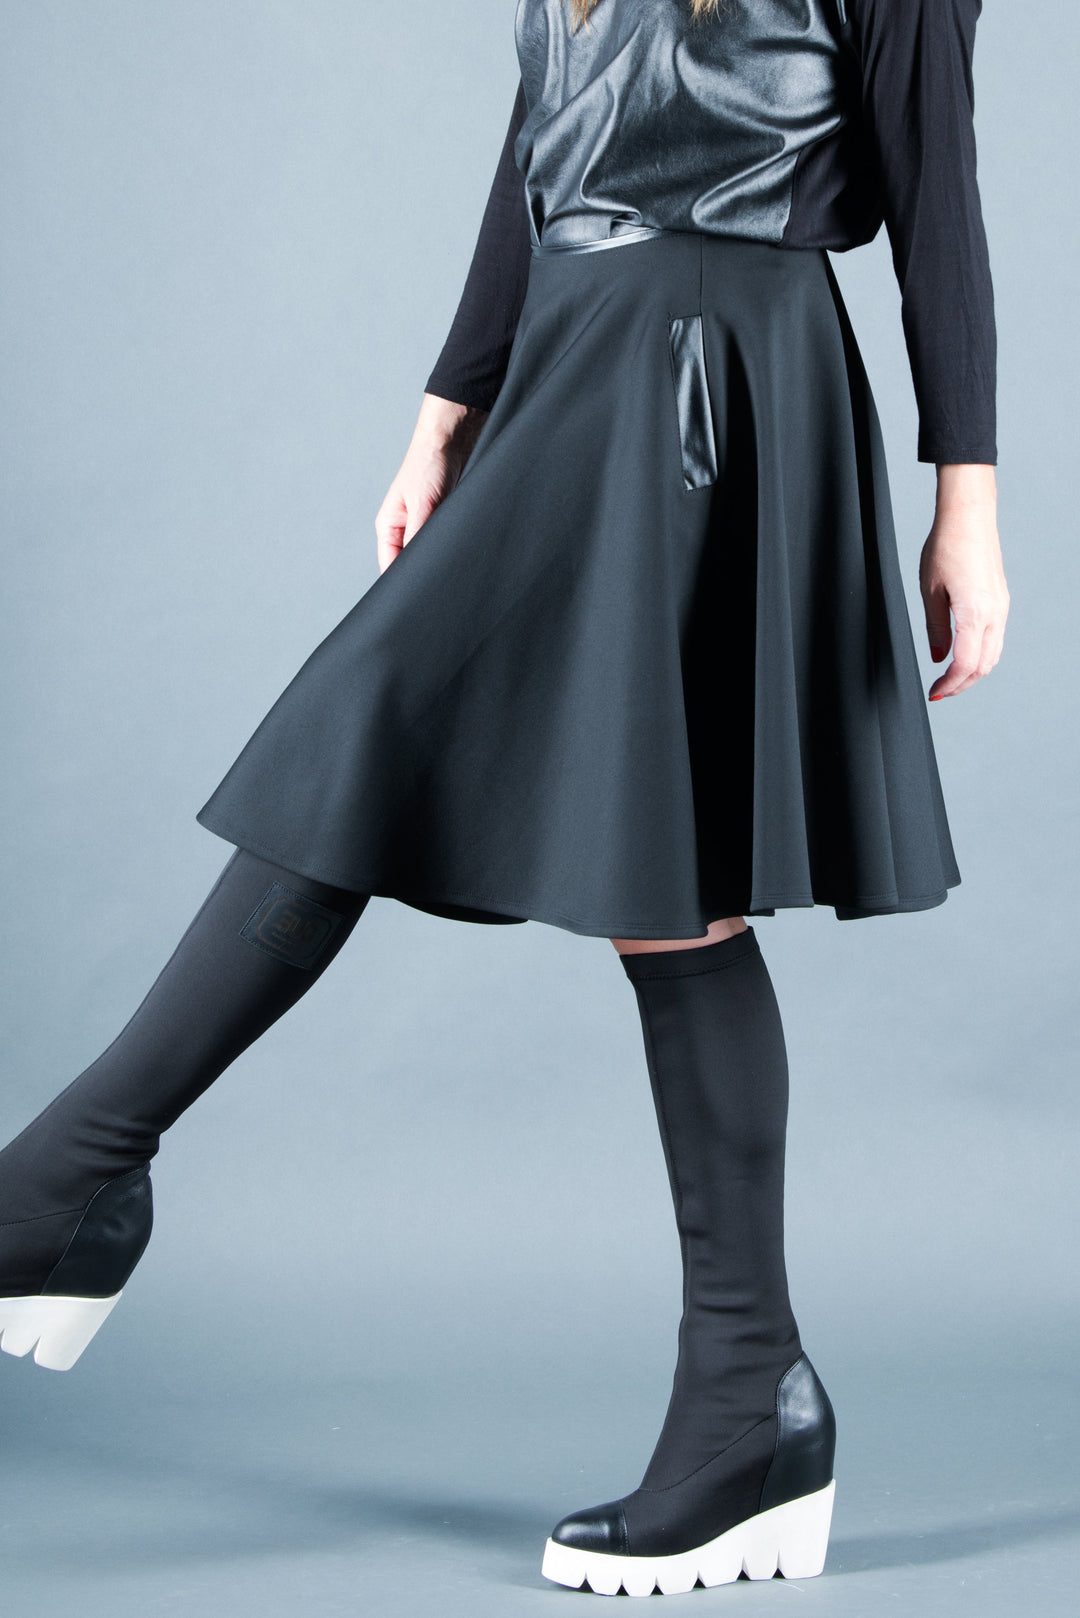 Black Neoprene knee length Skirt